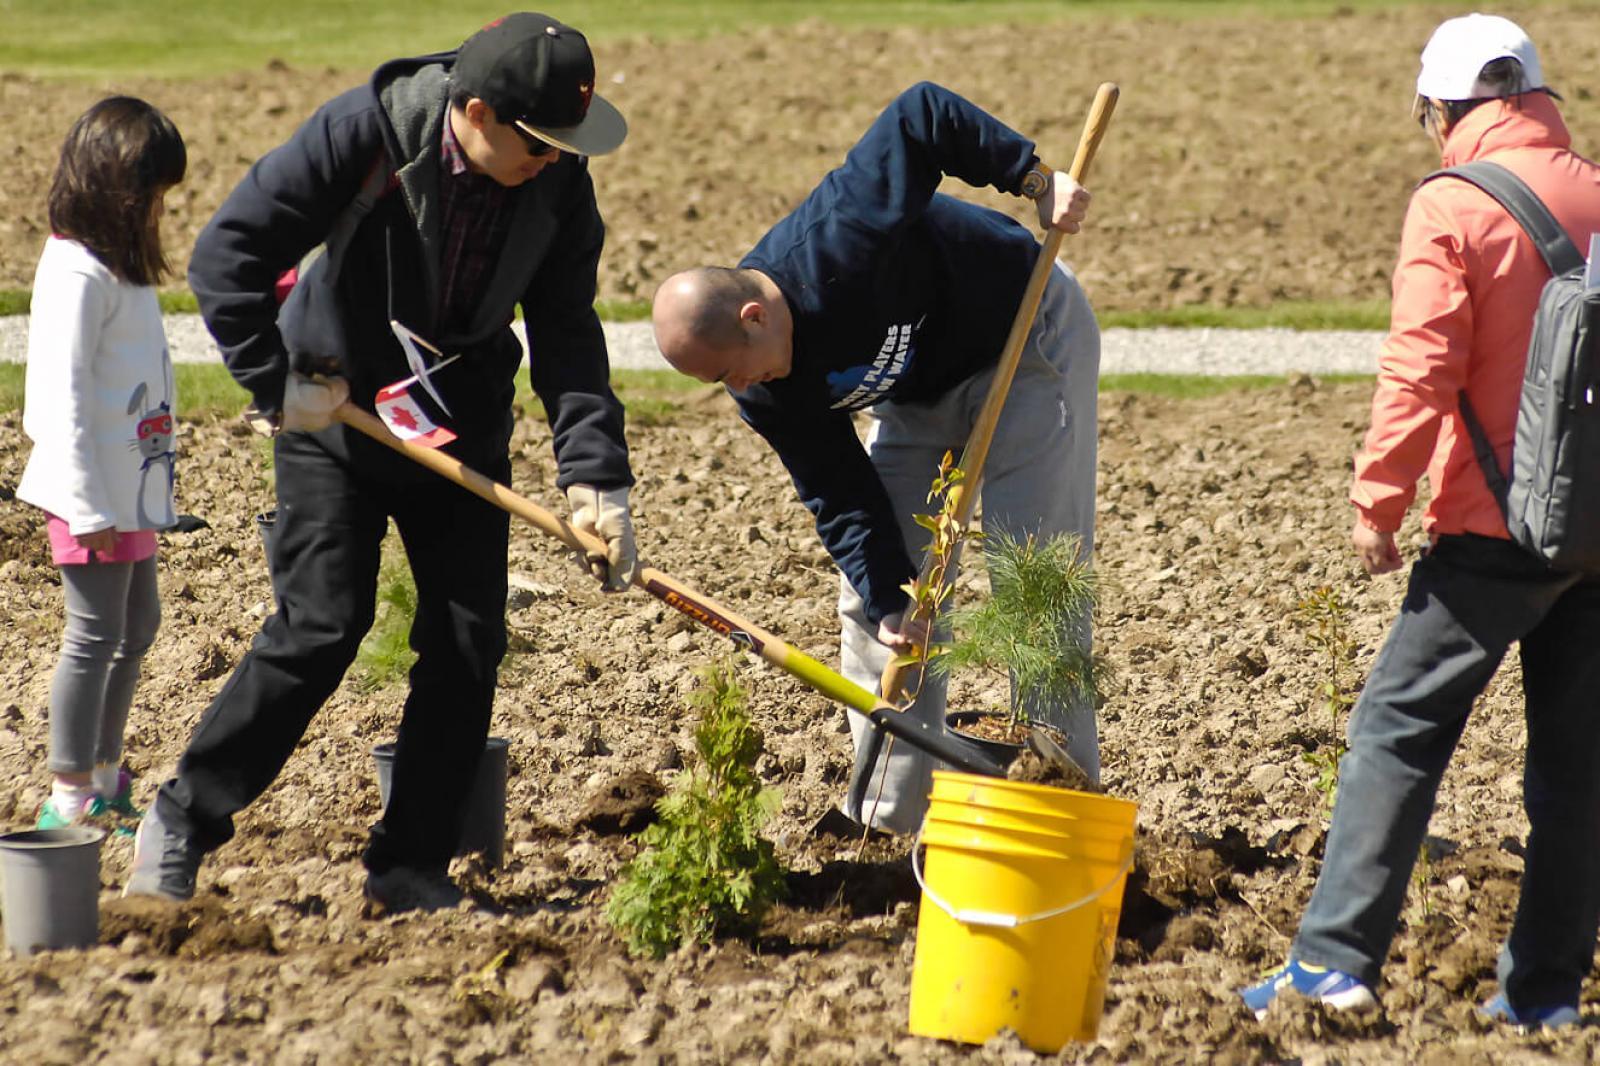 Vineland soil remediation workshop and tree planting November 3